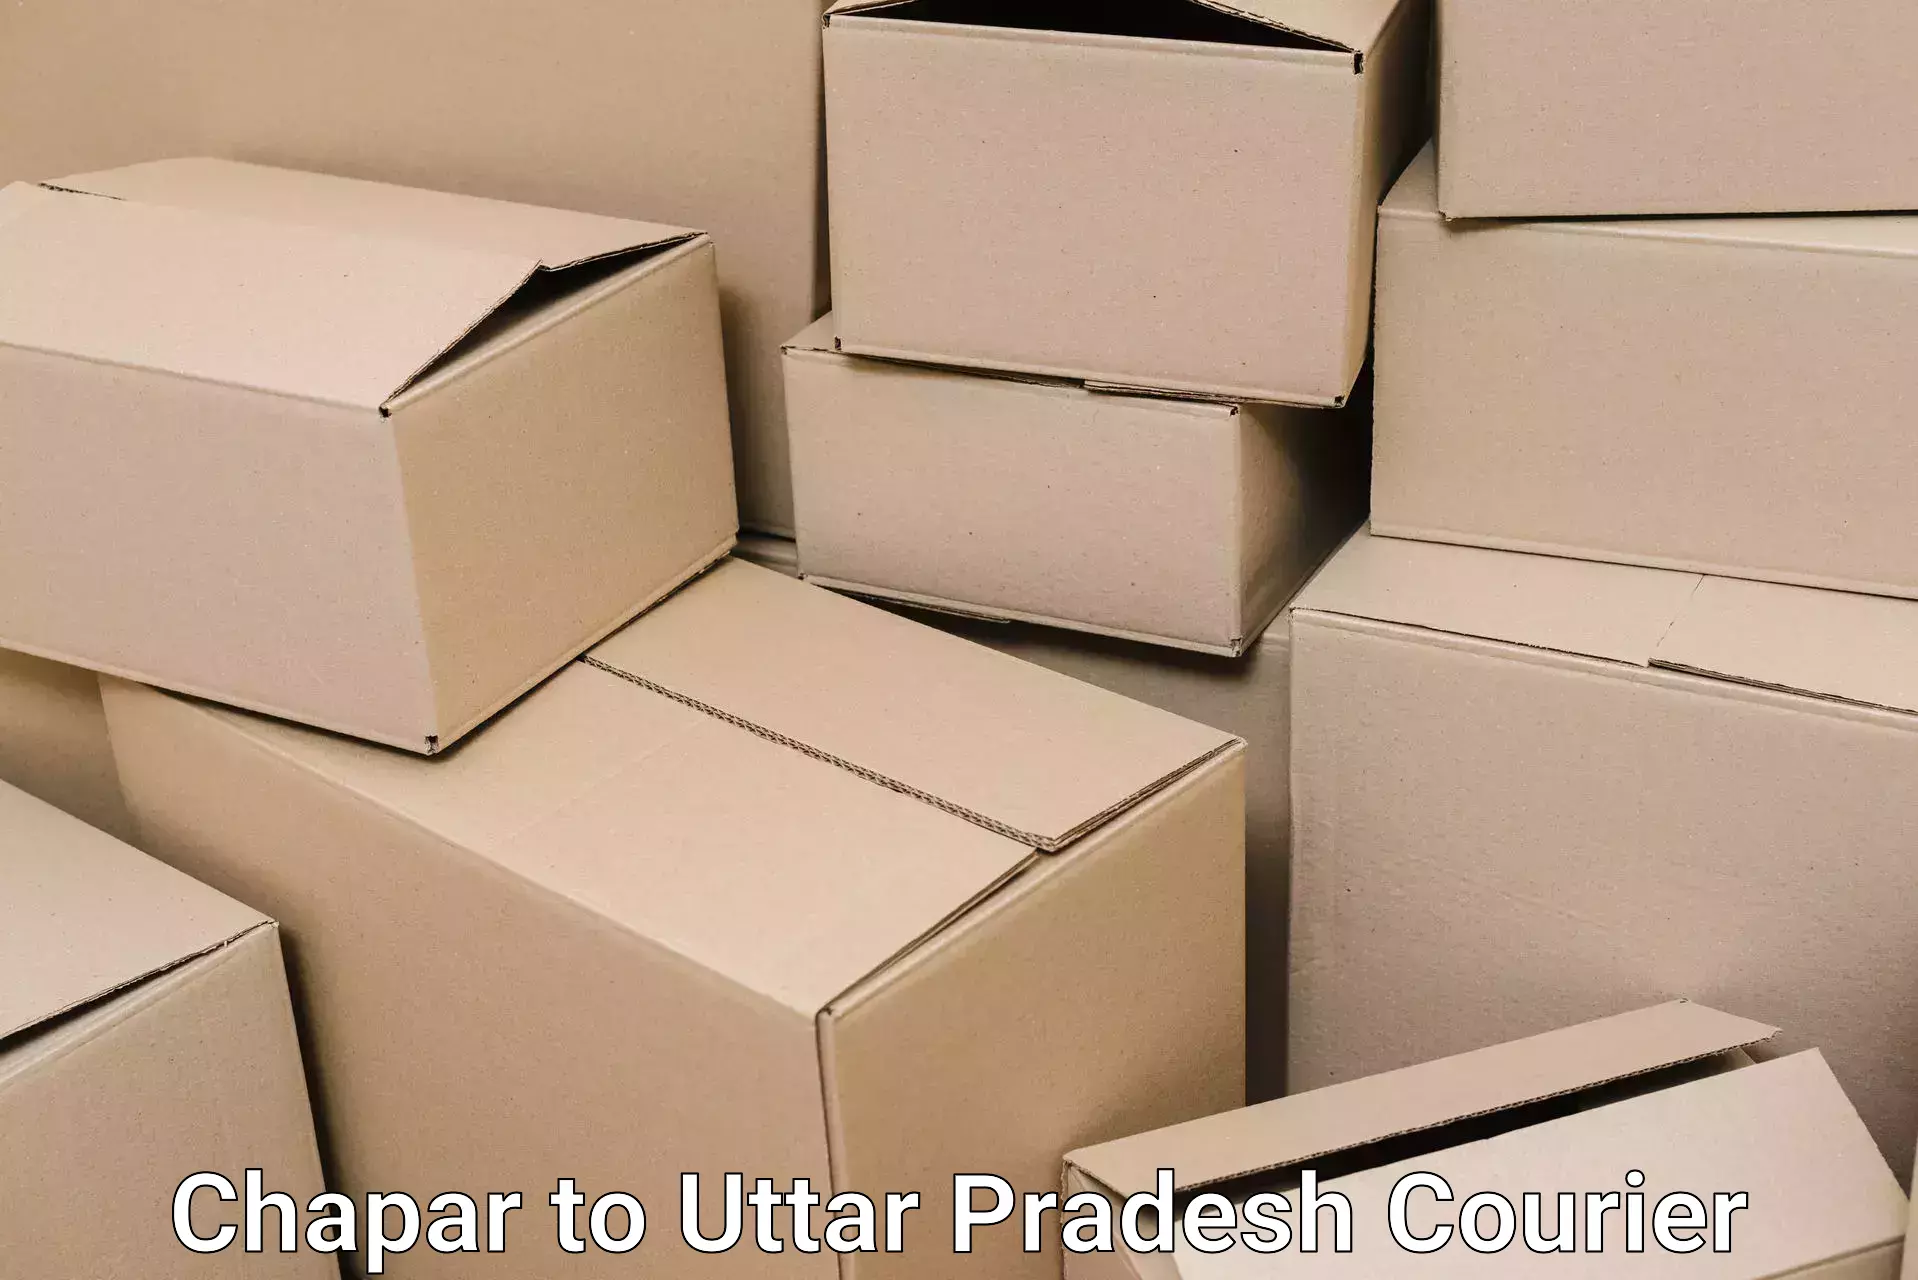 Full-service relocation Chapar to Uttar Pradesh